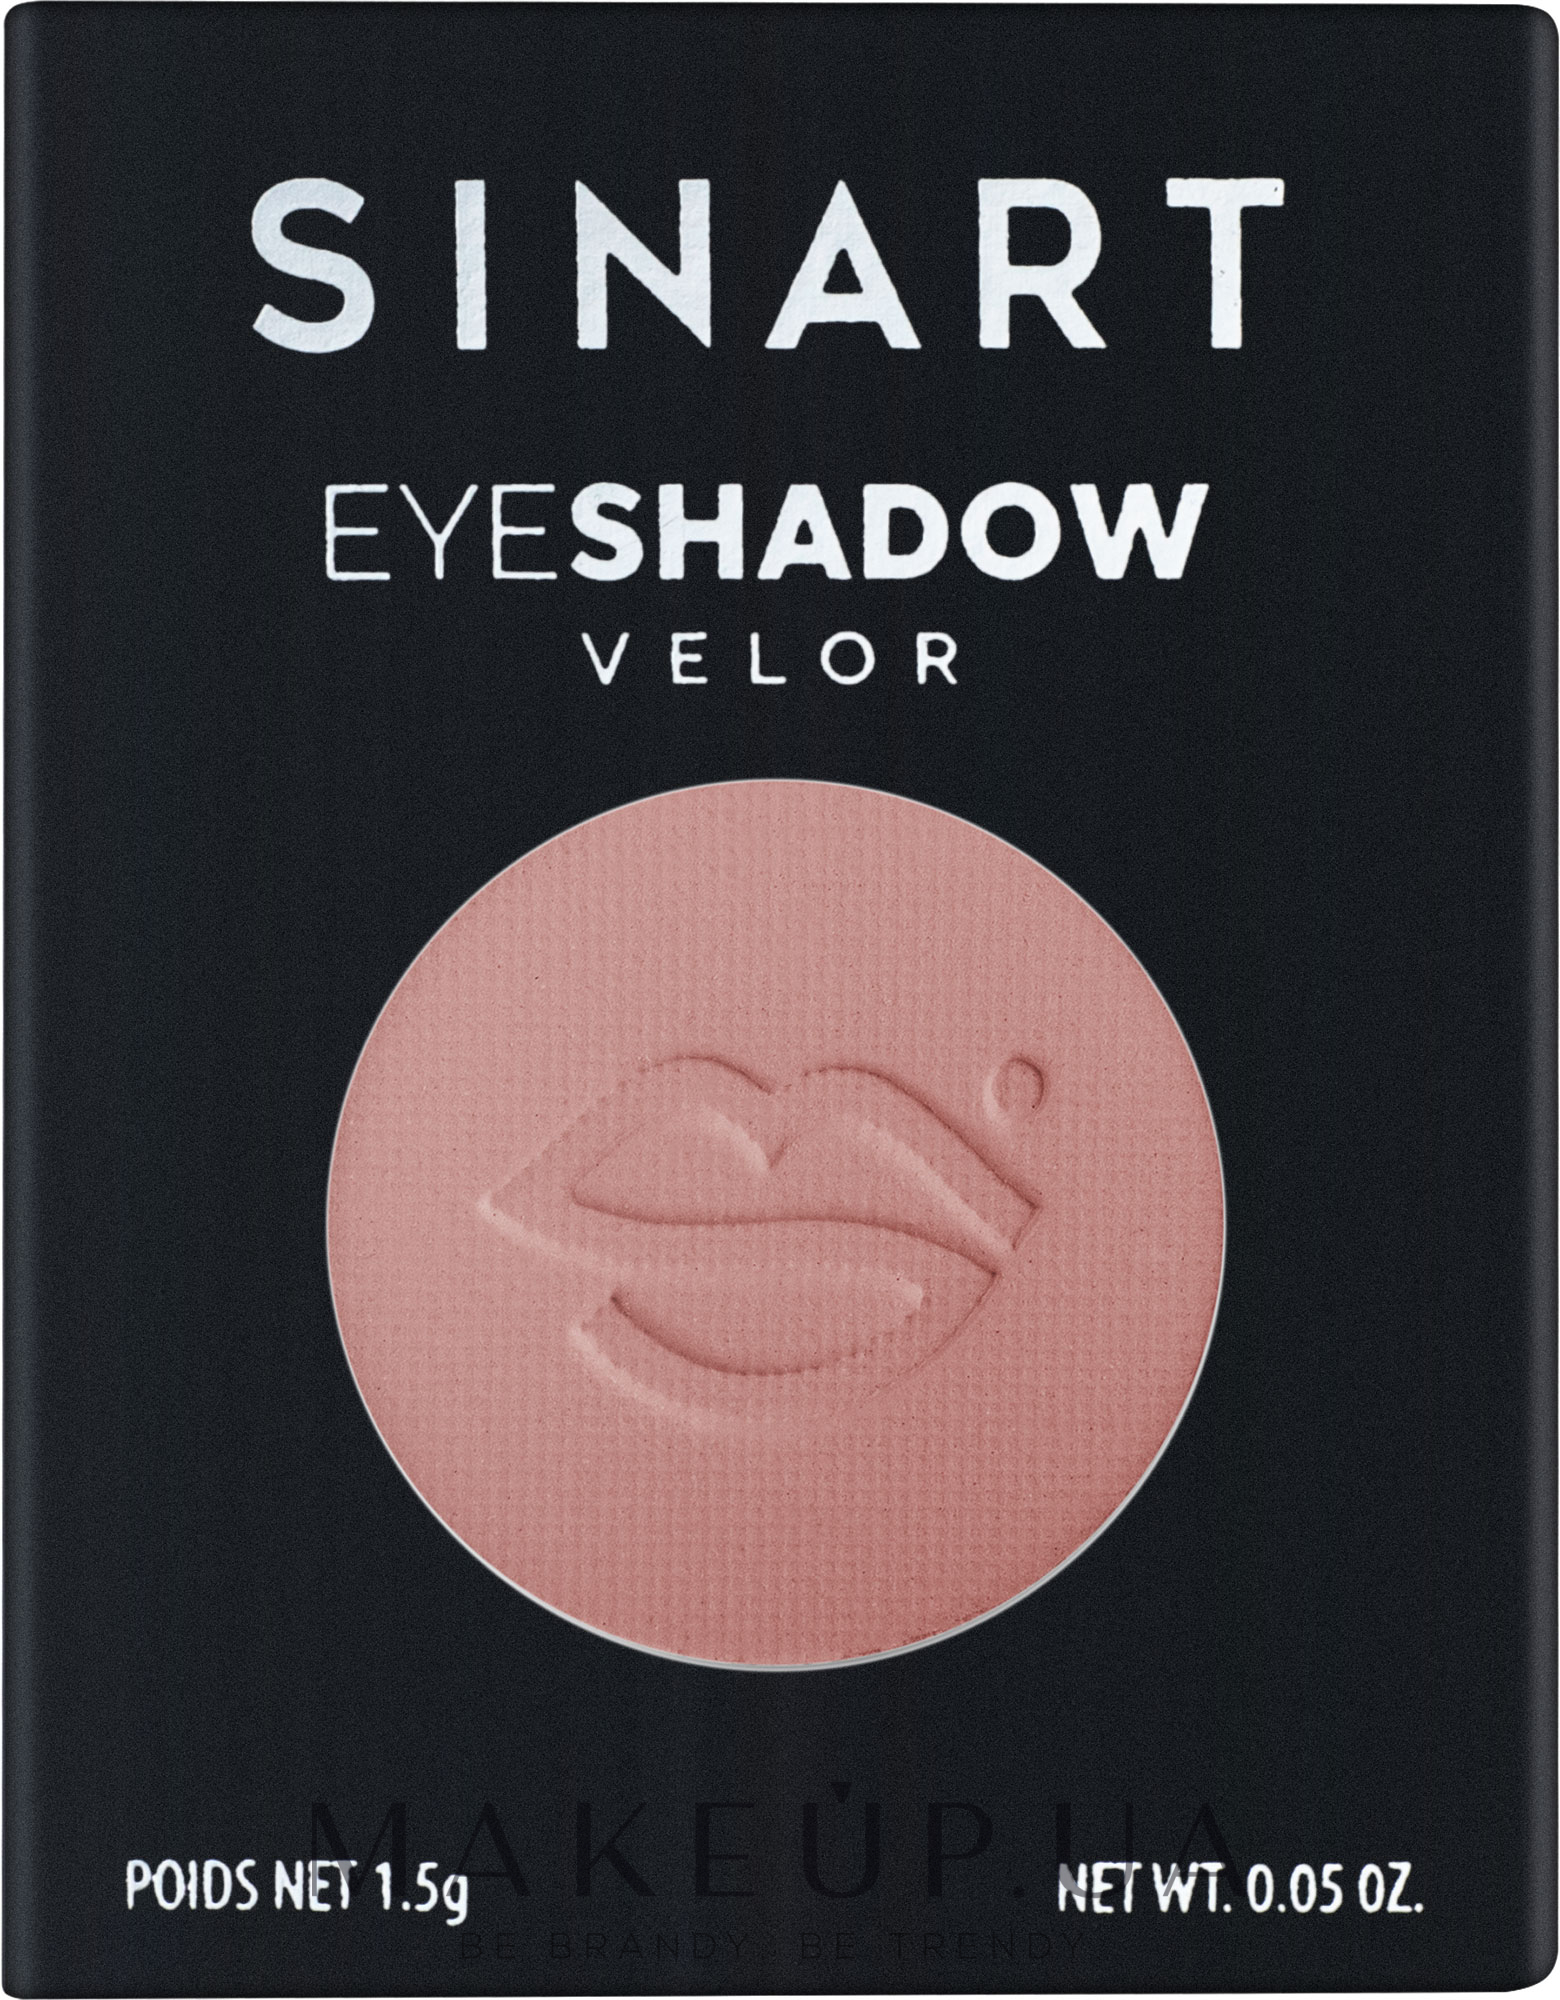 Sinart Eyeshadow Velor